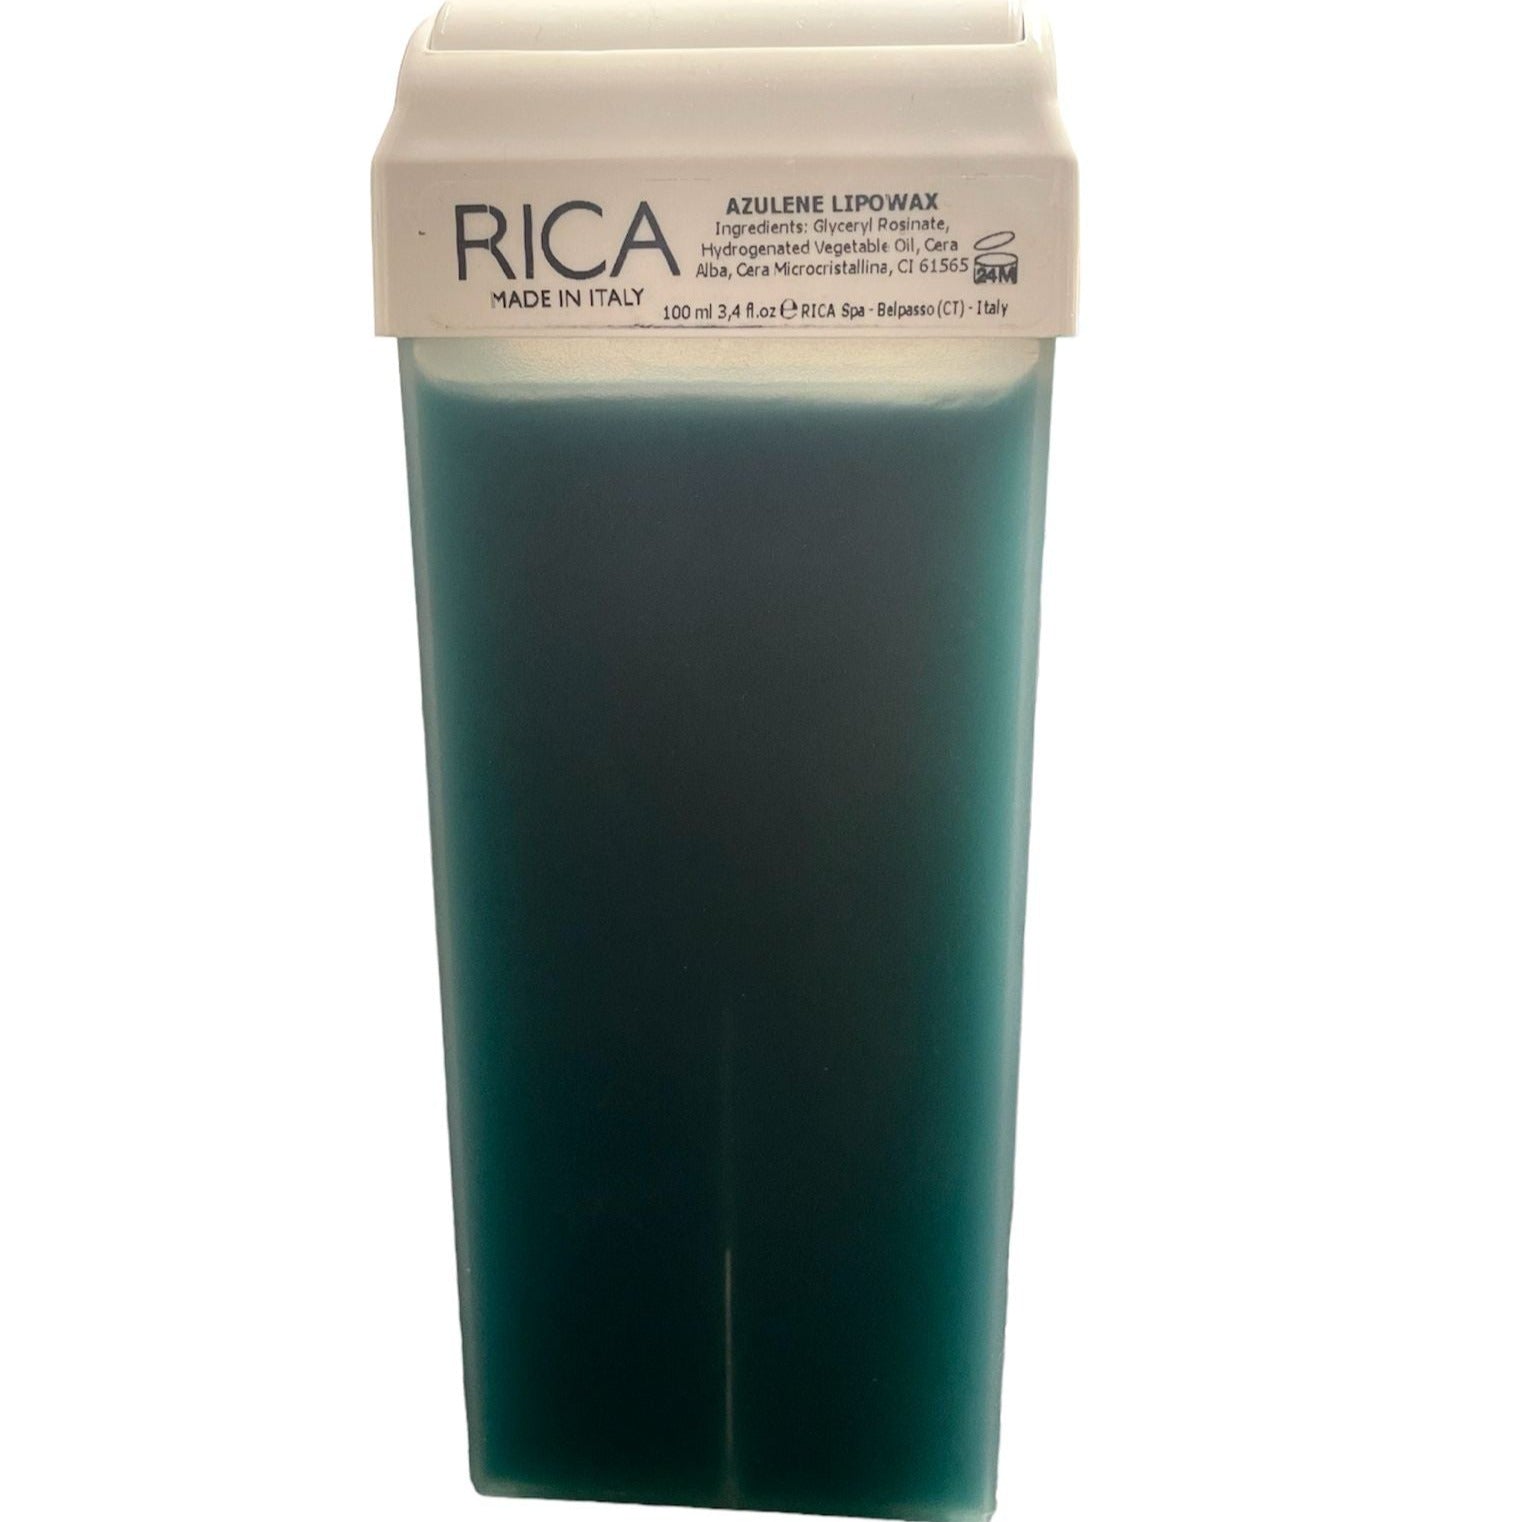 RO.IAL Cera Depilatoria Rullo Azulene